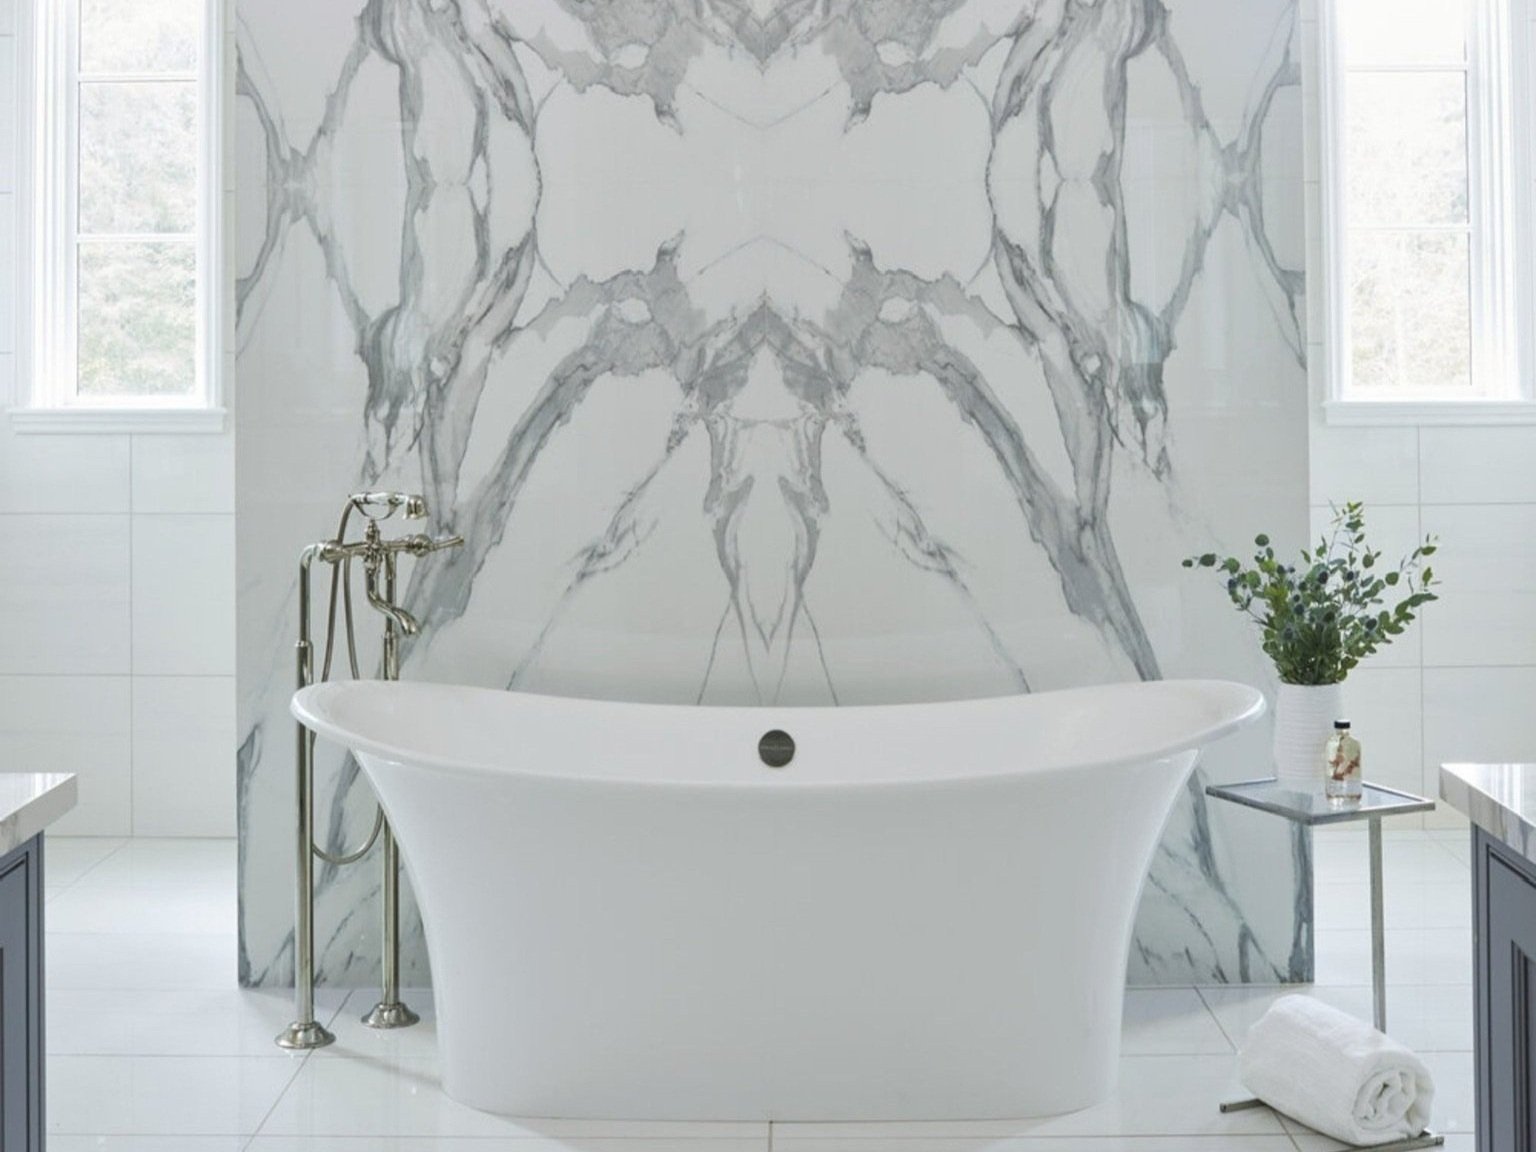 West-Central-Alabama-Ensuite-Bath-Marble-Large-Format-Tile-Freestanding-Bathtub